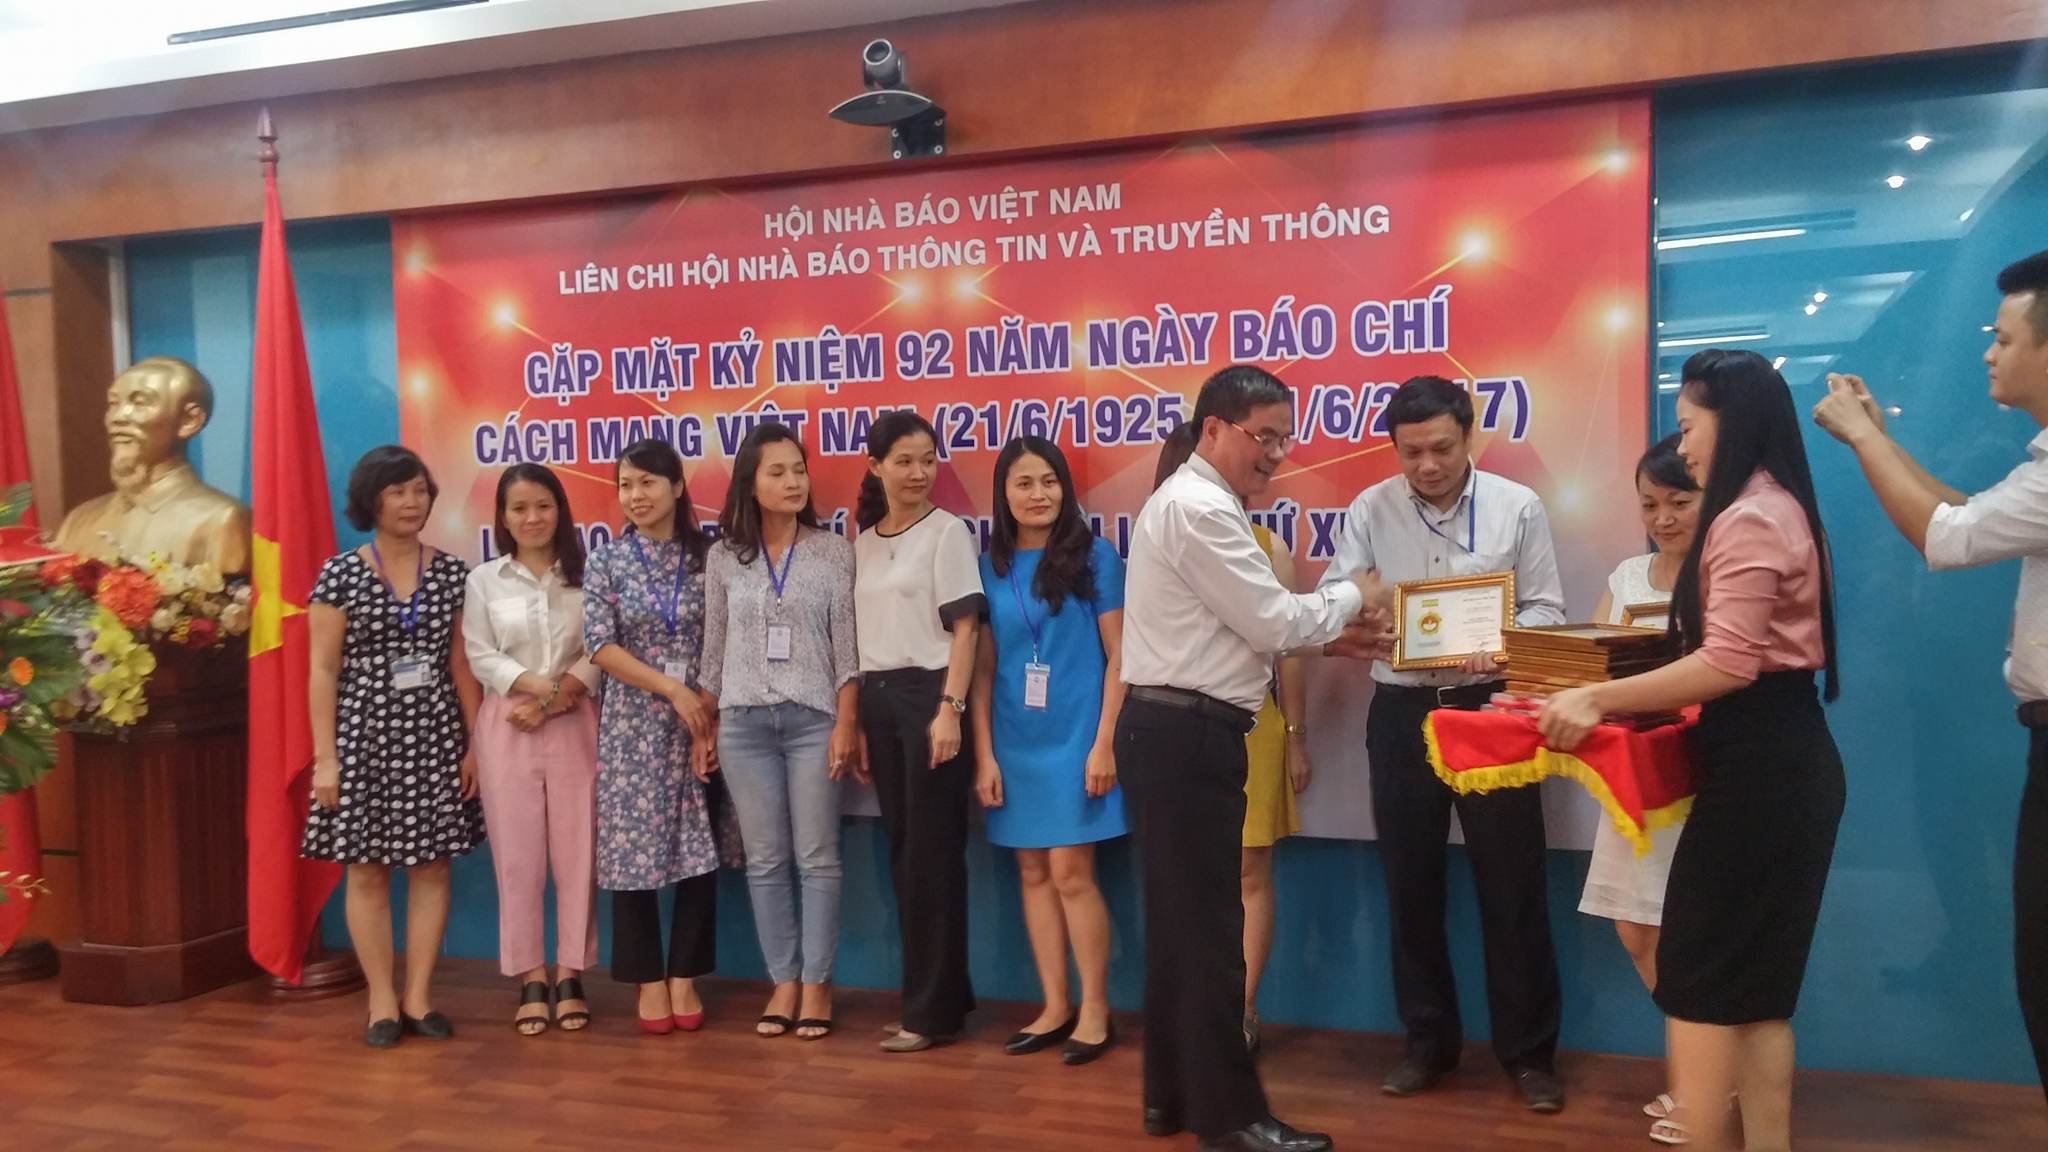 Đại diện lãnh đạo Hội Nhà báo Việt Nam trao tặng kỷ niệm chương Vì sự nghiệp báo chí cho các nhà báo